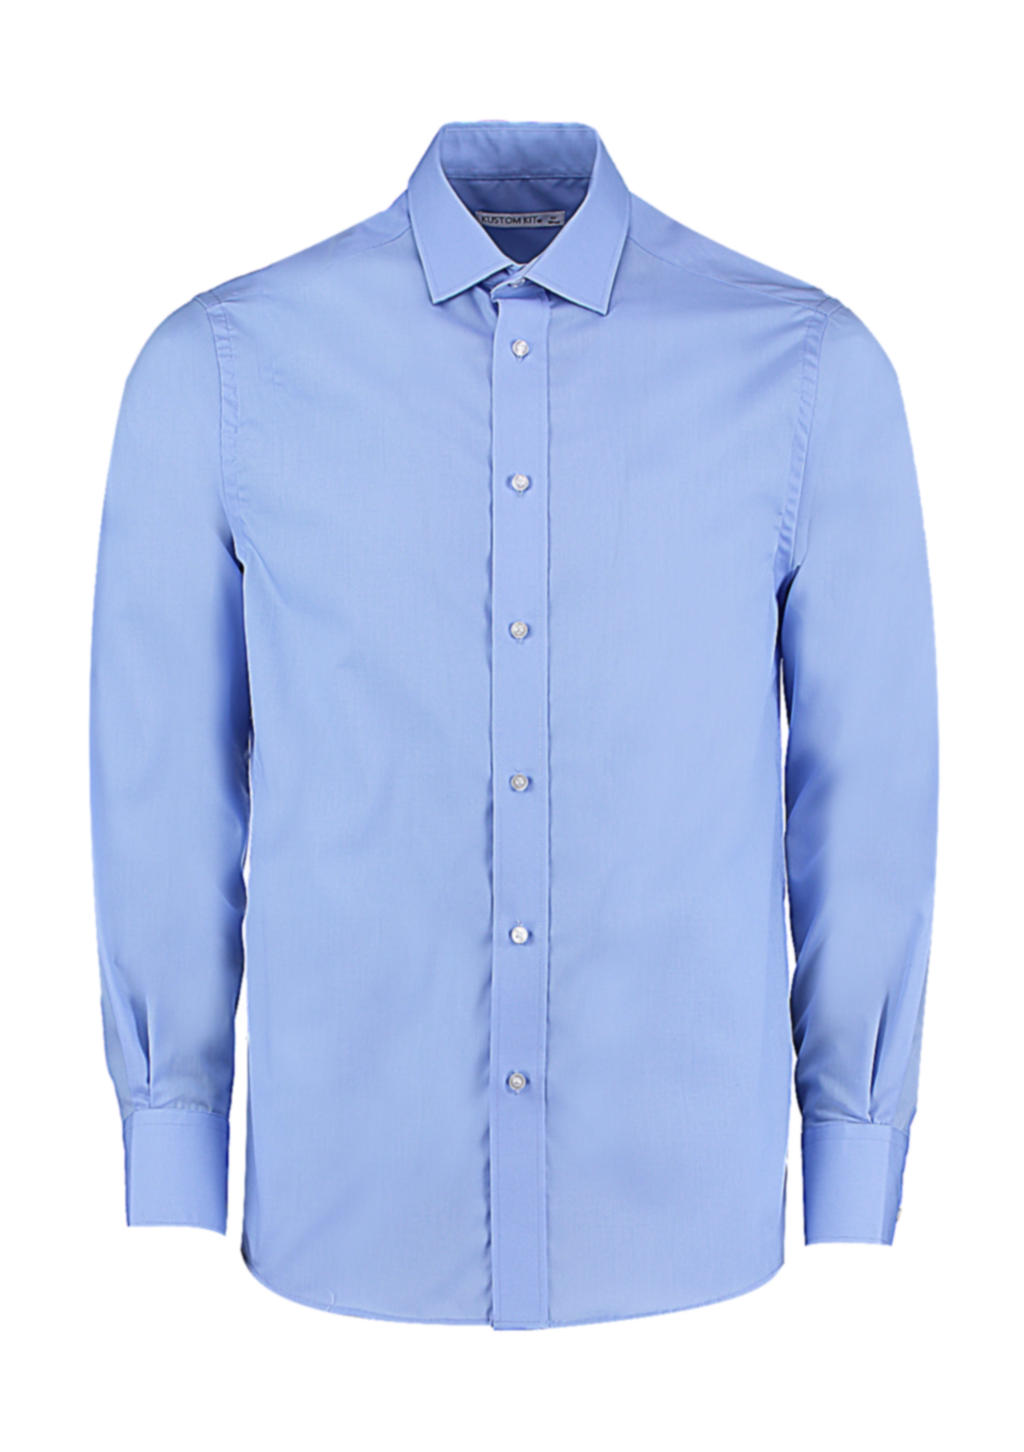 730.11 / Tailored Fit Business Shirt / Light Blue